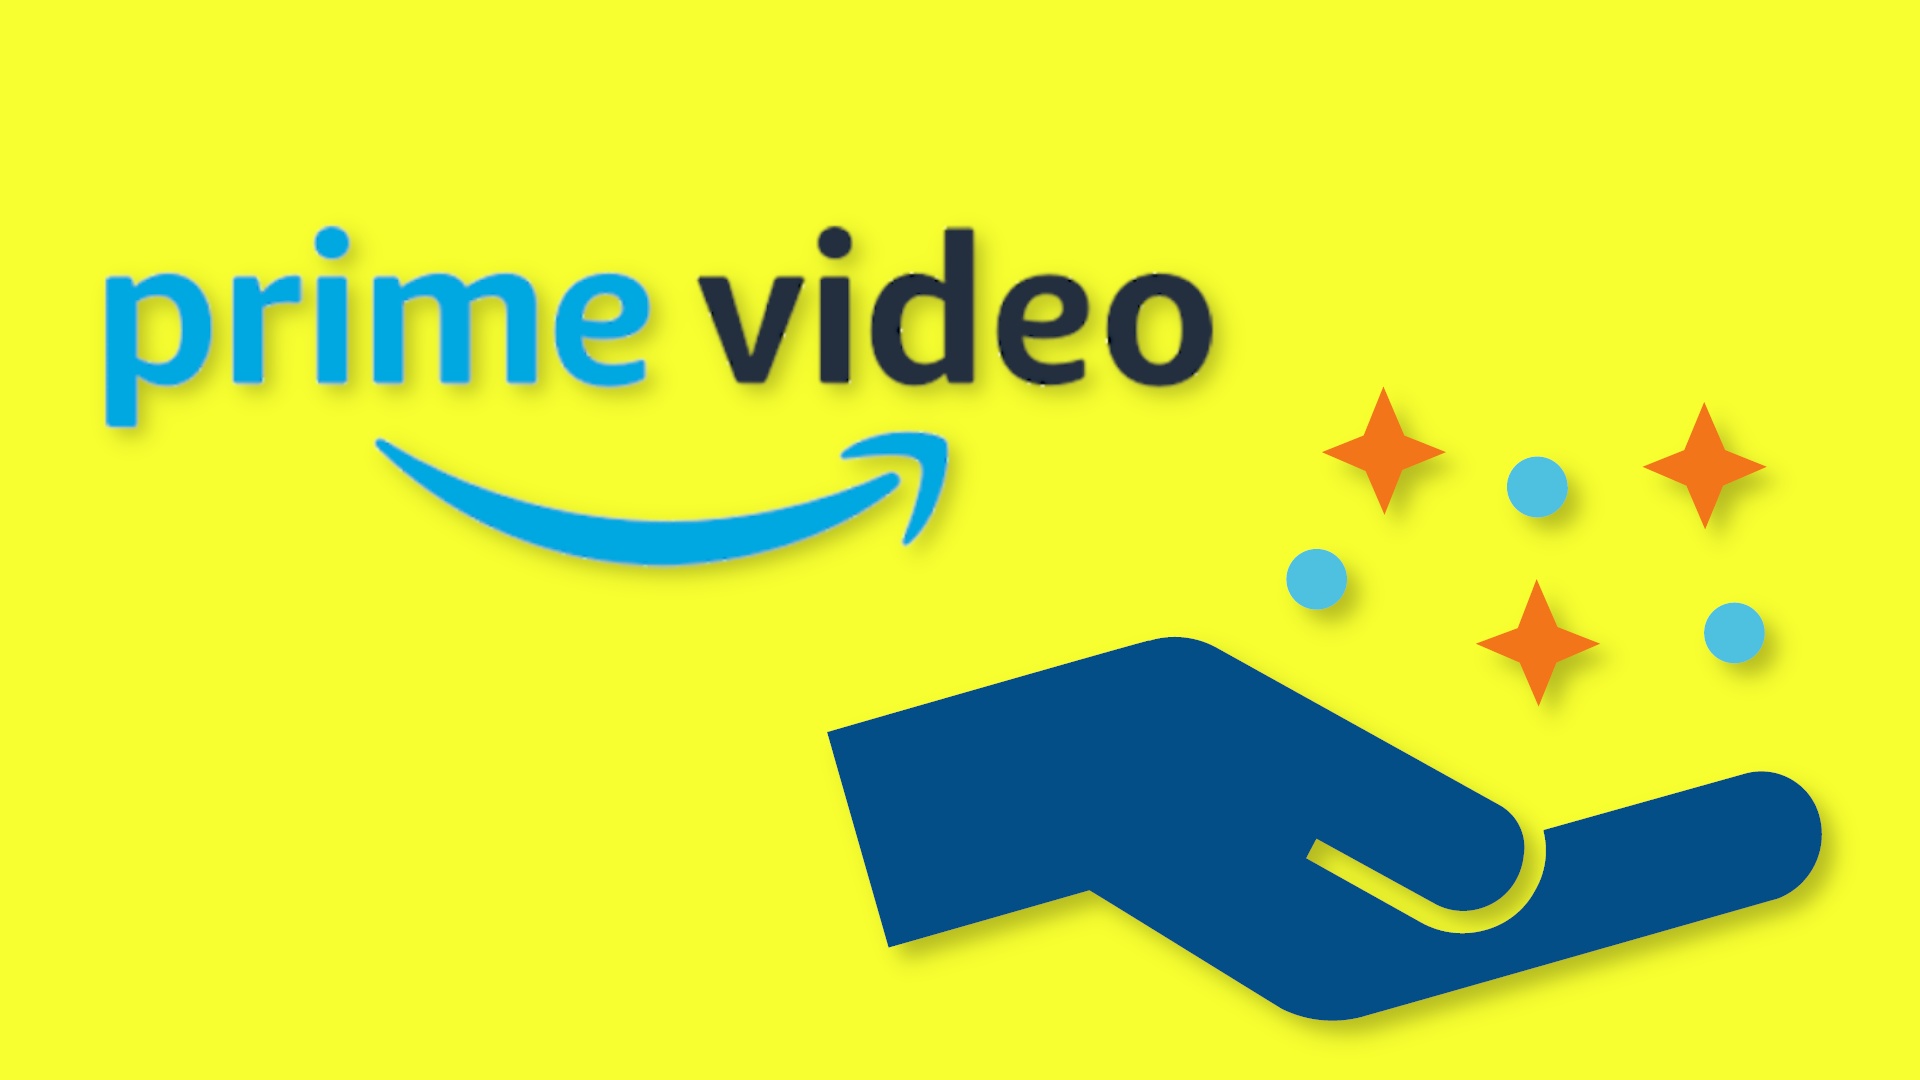 #Nach Netflix nun Amazon: Für Prime Video soll ein günstiges Abo mit Werbung kommen